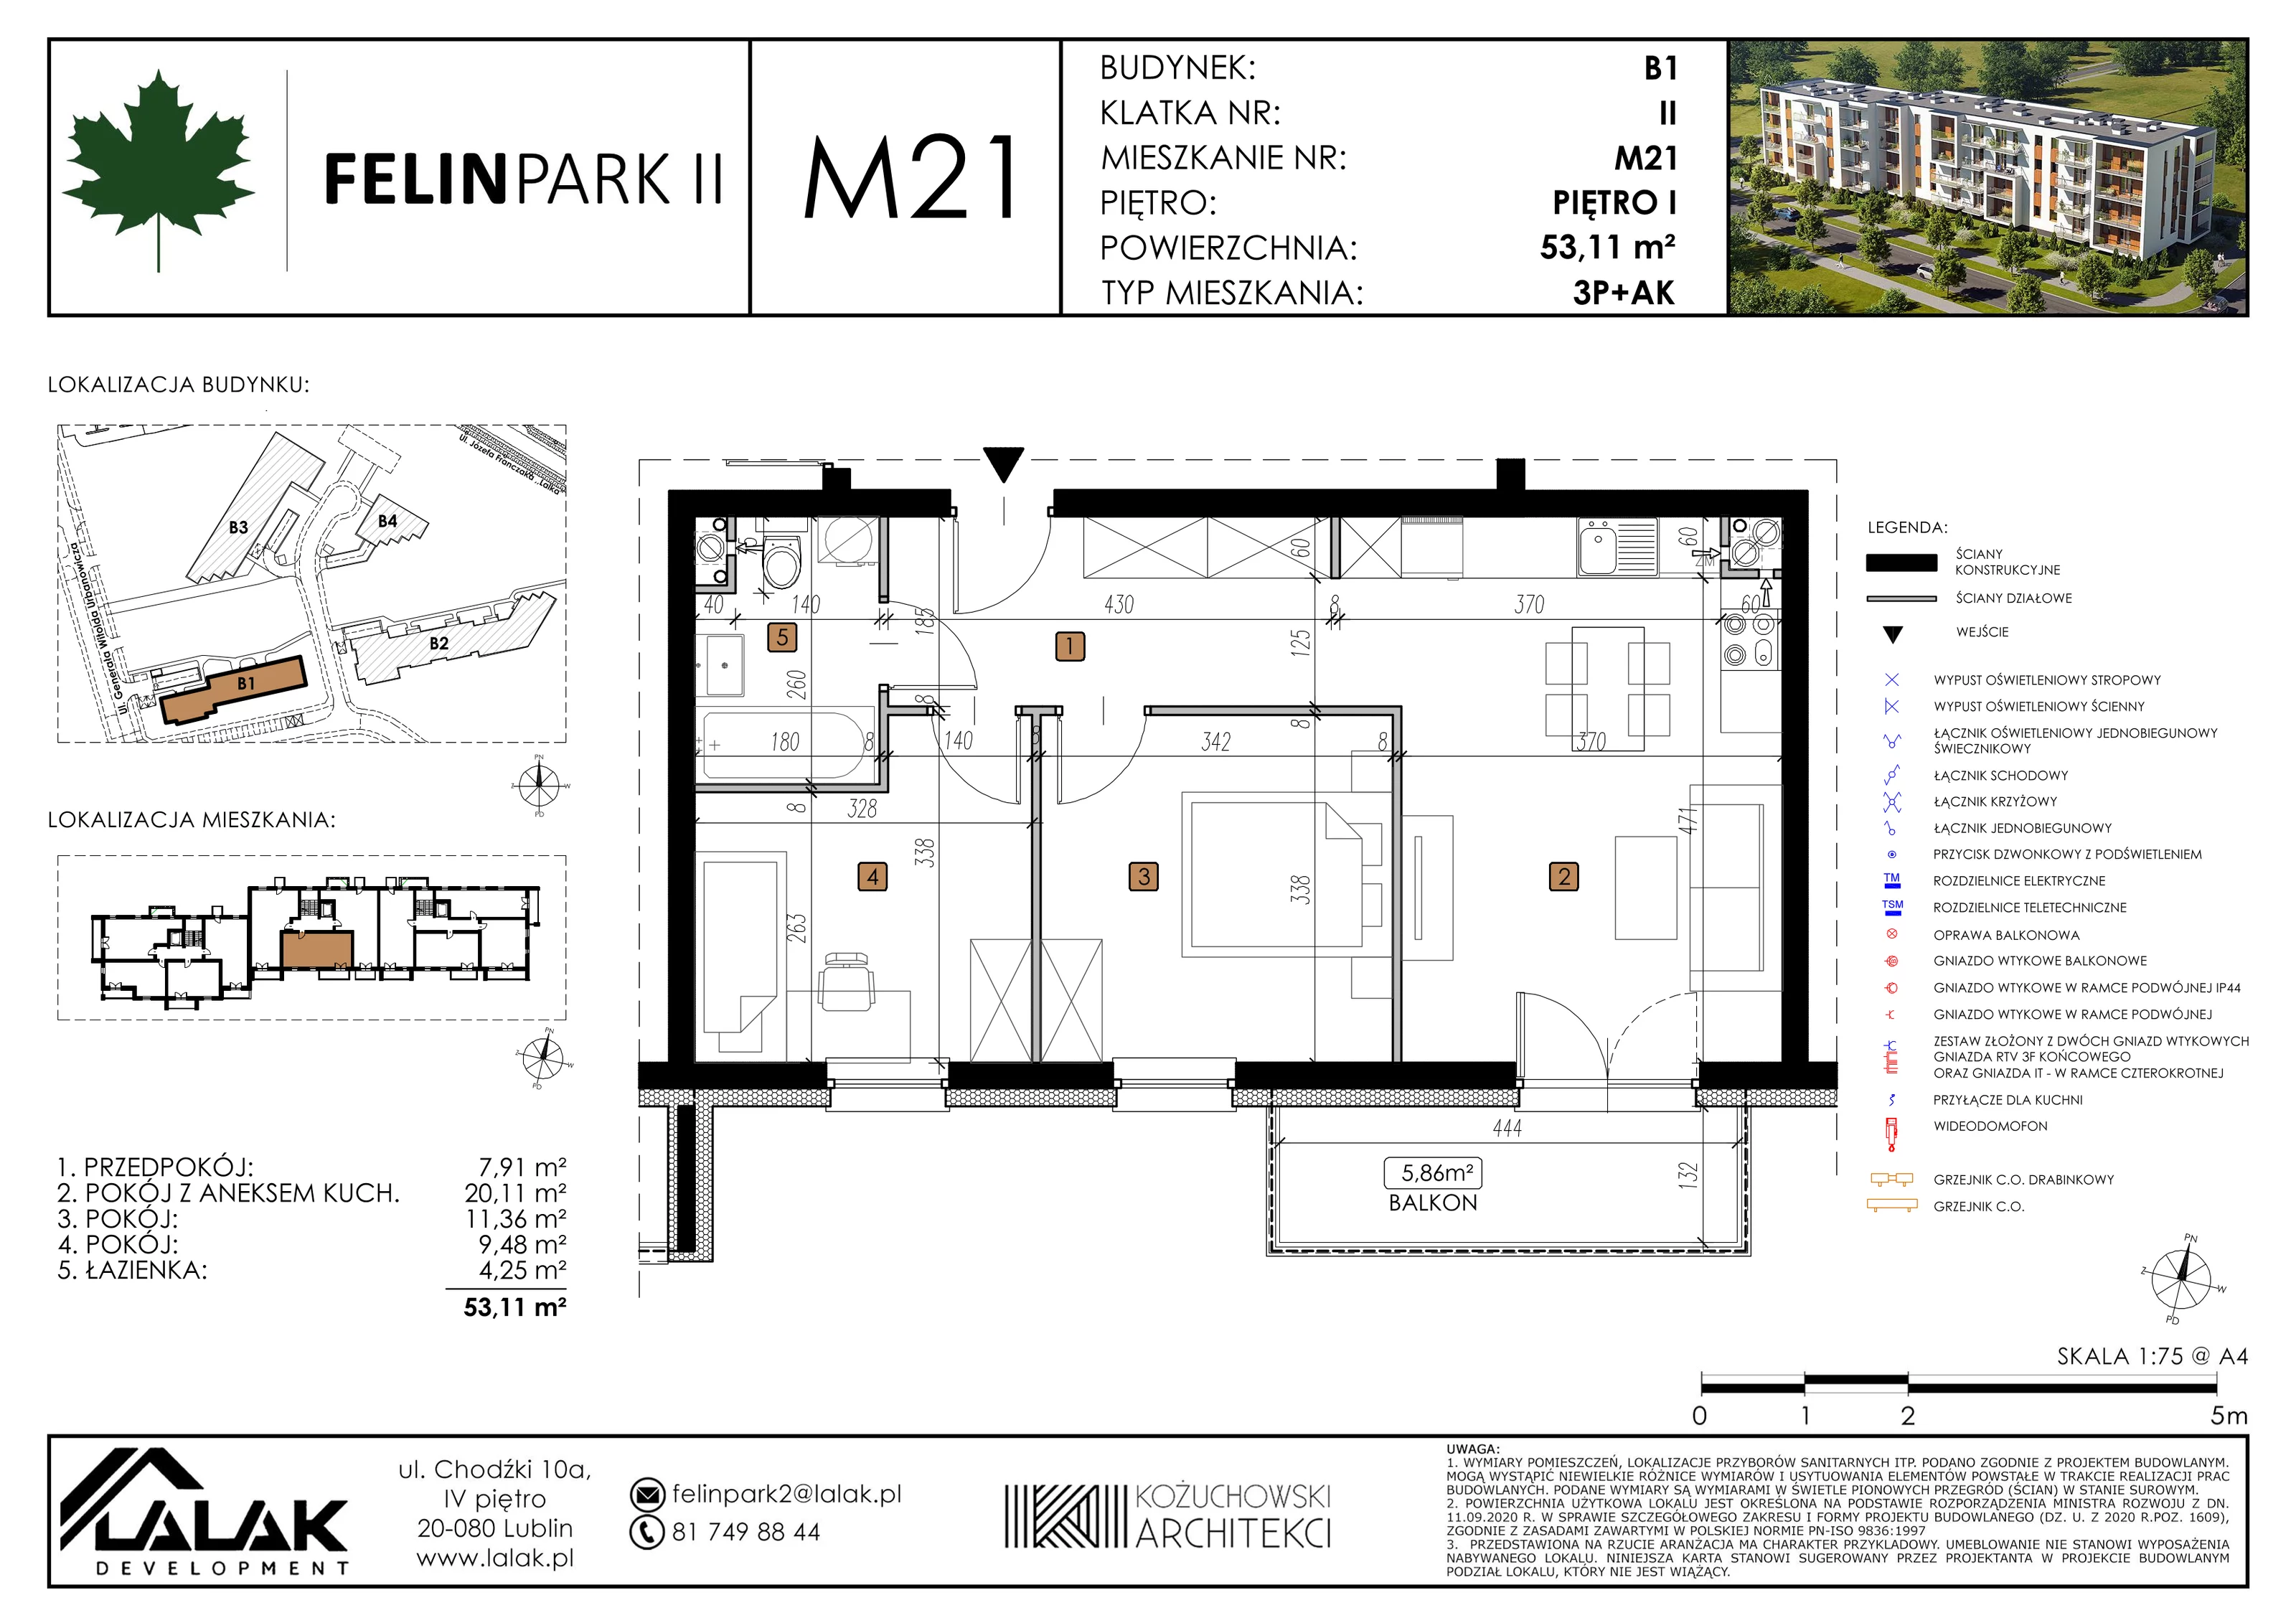 Mieszkanie 53,12 m², piętro 1, oferta nr B1_M21/I, Felin Park II, Lublin, Felin, ul. gen. Stanisława Skalskiego 8-10